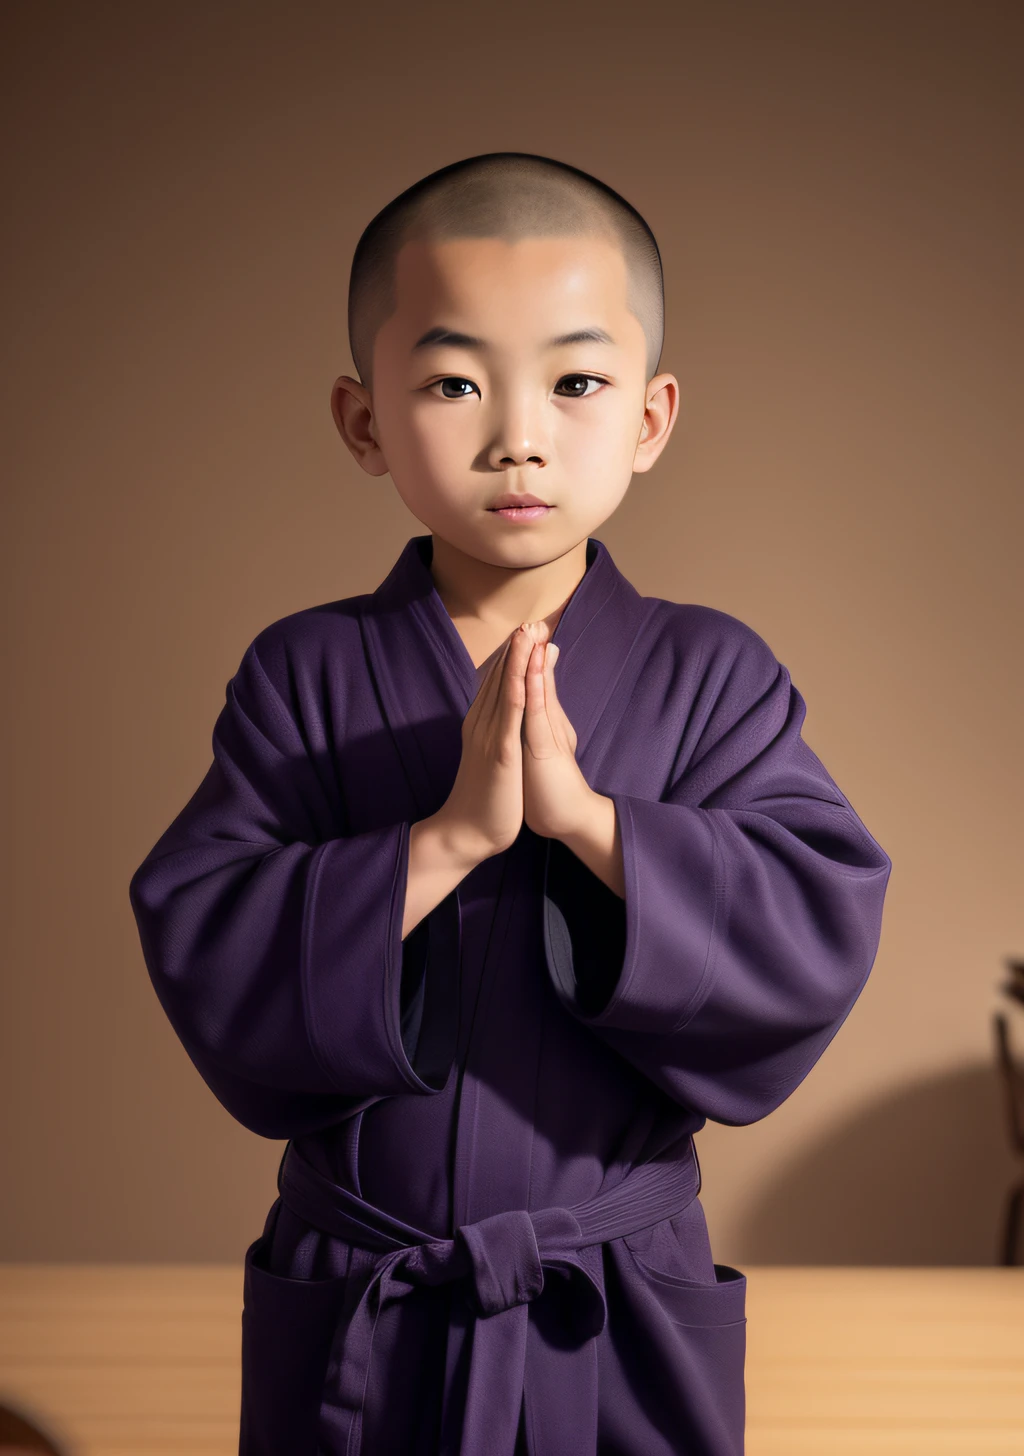 Arafed asiatischer Junge in lila Robe steht vor einem Tisch, in dunkelvioletten Gewändern, trägt schwarze und violette Roben, in einfache Gewänder gekleidet, Buddhist monk, Porträt eines Mönches, braune Roben tragen, Mönch Kleidung, Im blauen Gewand, Buddhist, in einfache Gewänder gekleidet, Trägt ein blaues Gewand, taoistische Robe, inspiriert von Ma Quan, alter japanischer Mönch